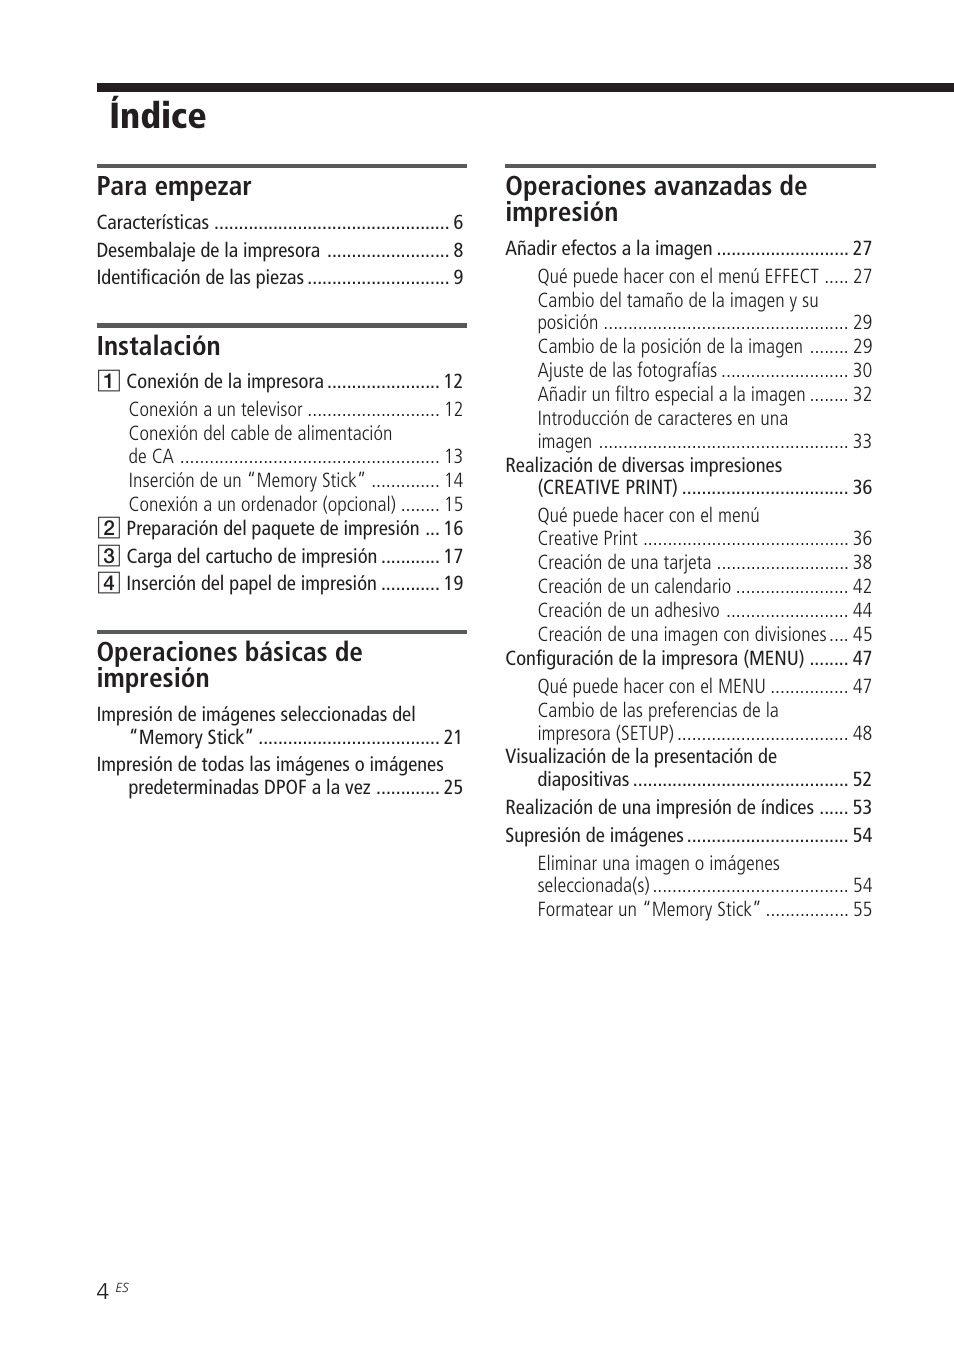 Índice, Para empezar, Instalación | Operaciones básicas de impresión, Operaciones avanzadas de impresión | Sony DPP-EX5 Manual del usuario | Página 4 / 88